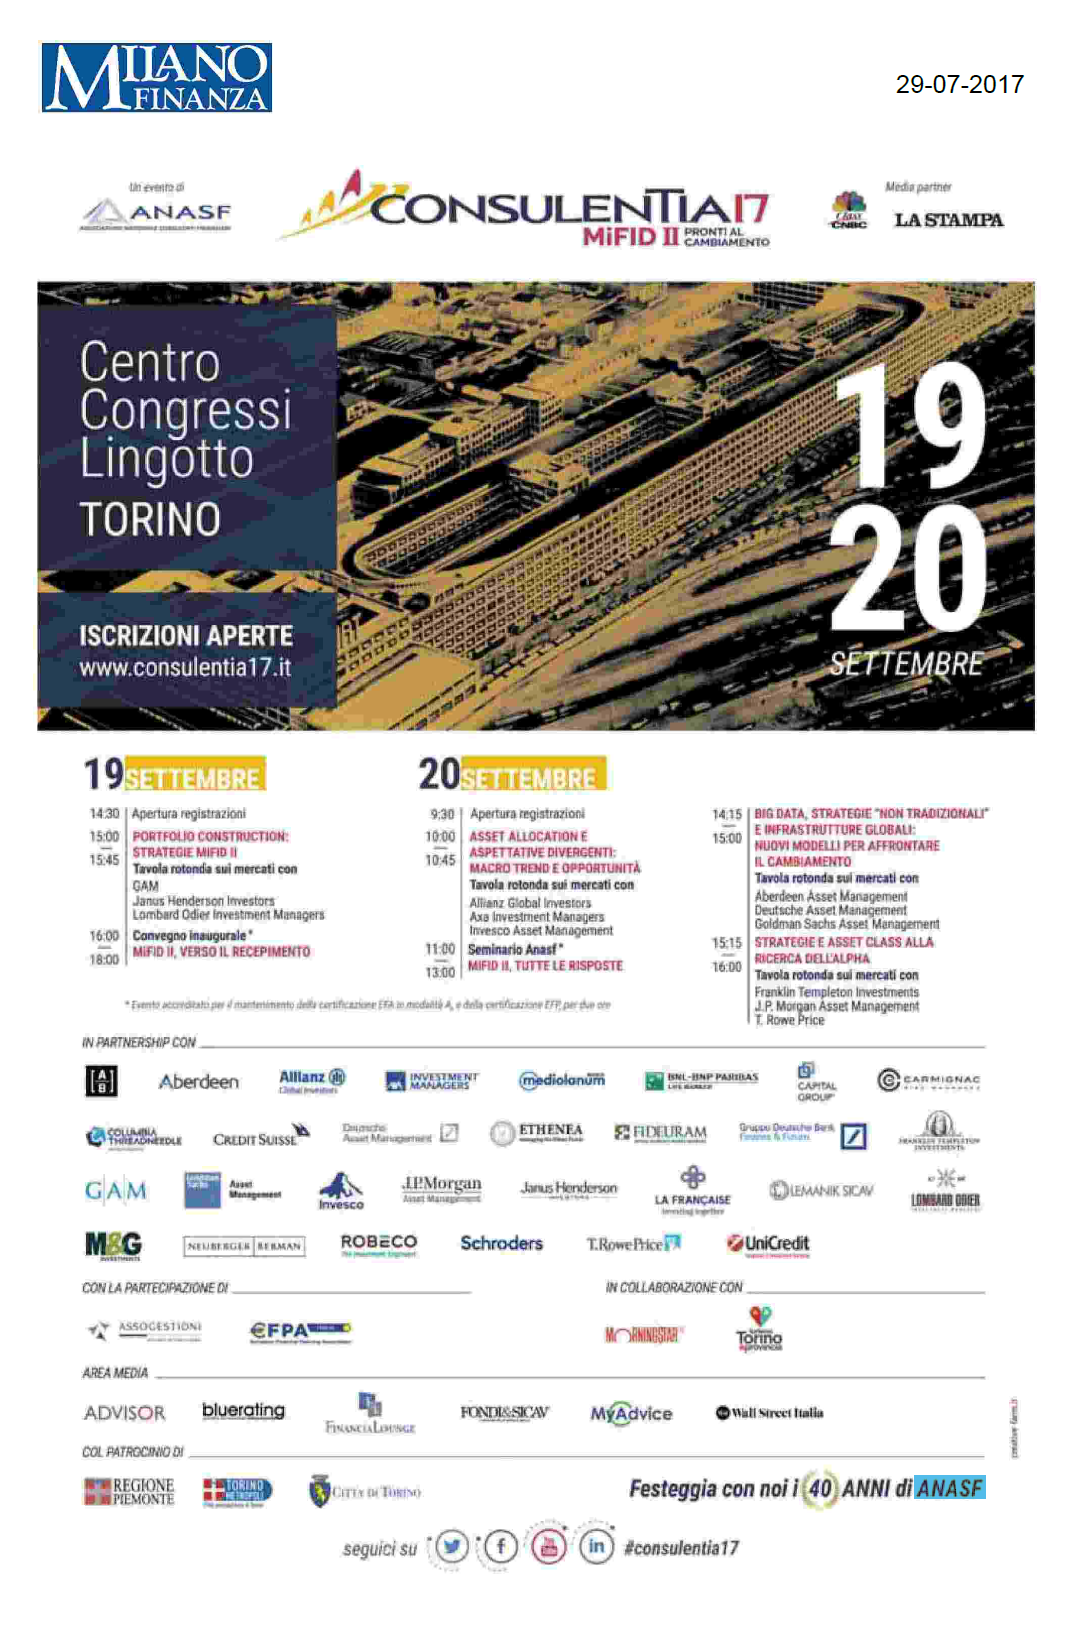 ConsulenTia17 Torino è su Milano Finanza